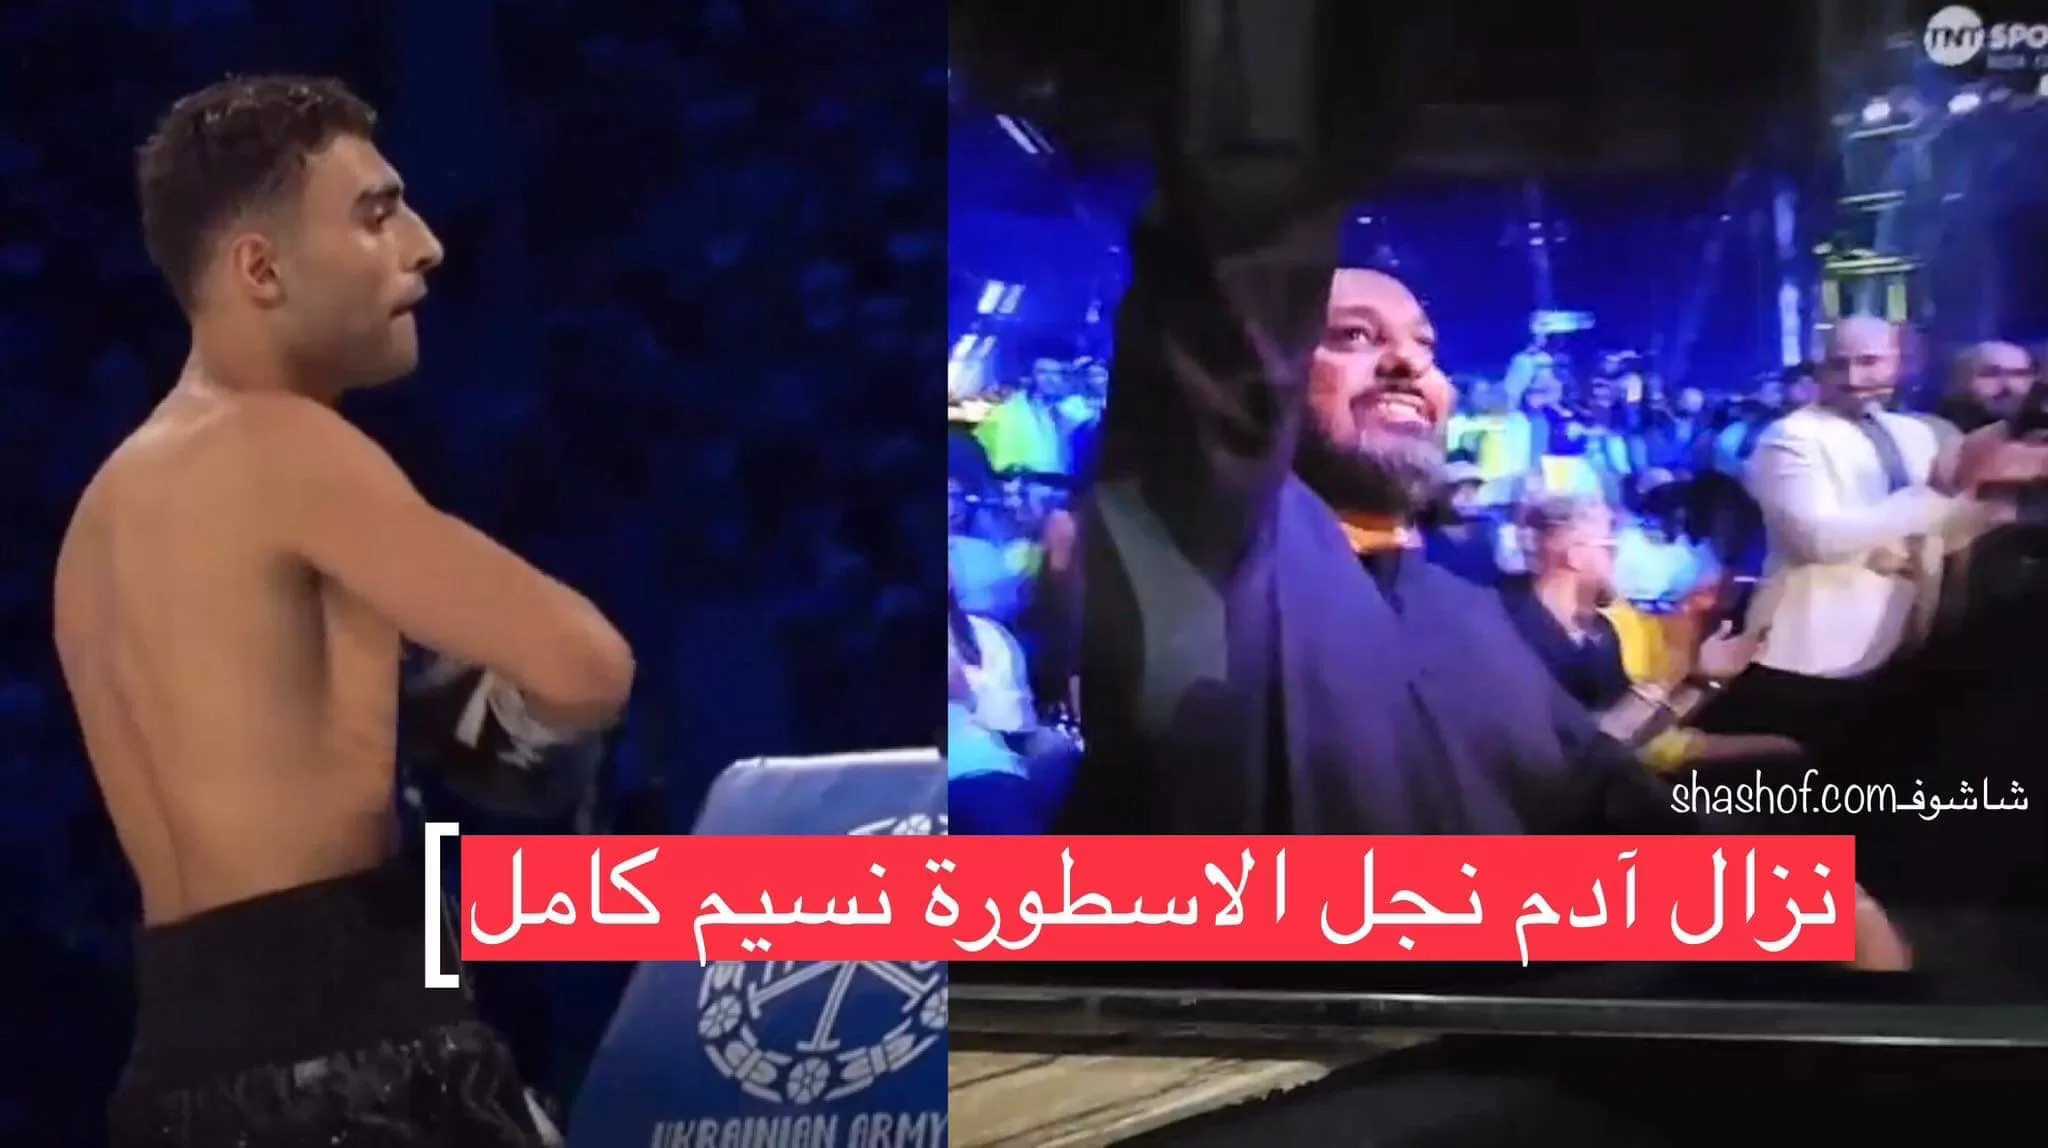 مباراة اليمني آدم نسيم حميد الأولى كامله فوز بالقاضية على التشيكي (فيديو)​